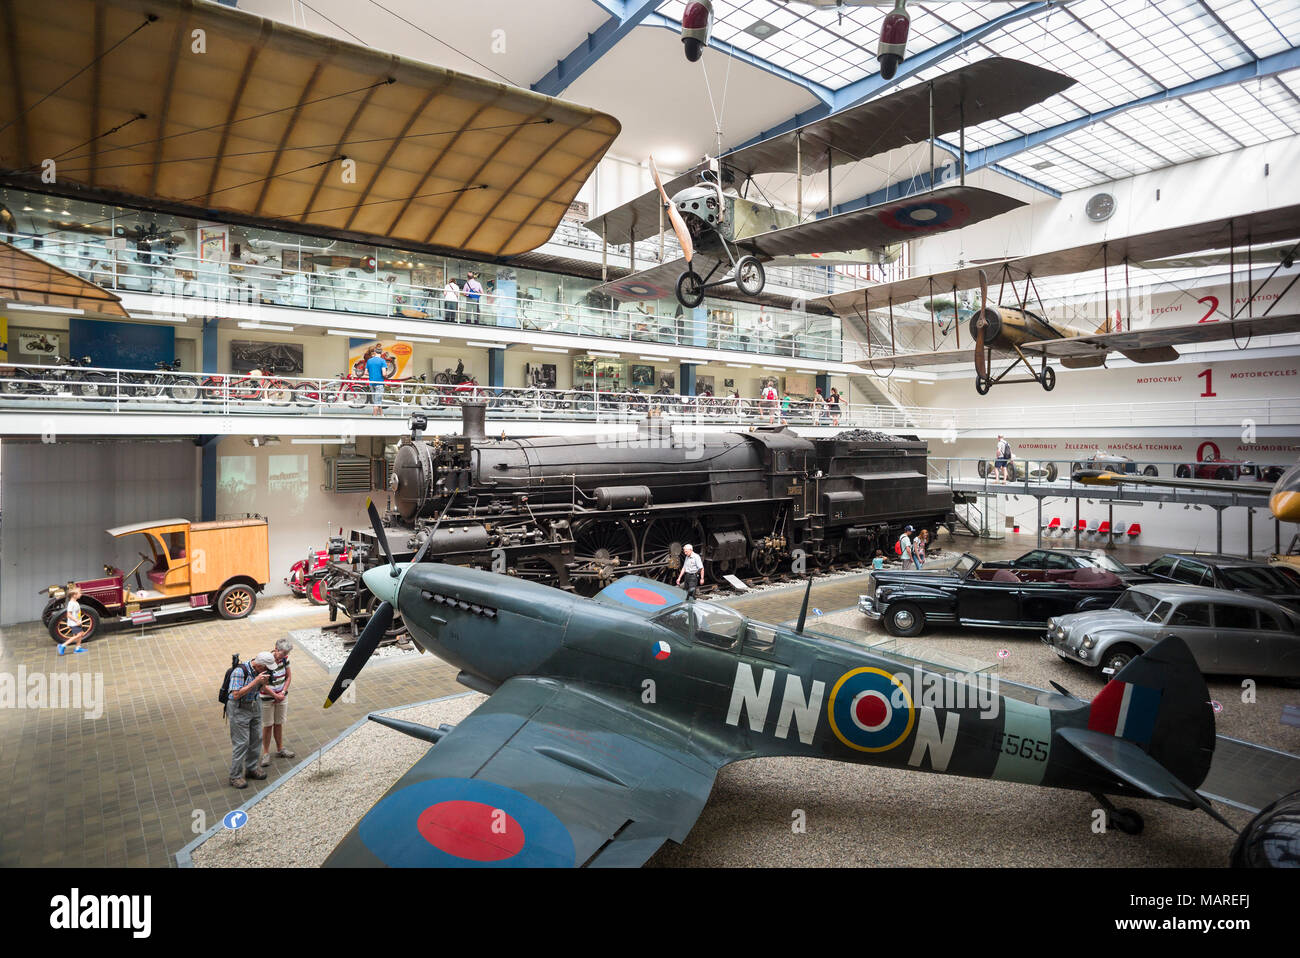 Prague. République tchèque. Spitfire, intérieur de la NTM Musée Technique National (Národní technické muzeum). Le premier plan est le Spi Supermarine britannique Banque D'Images